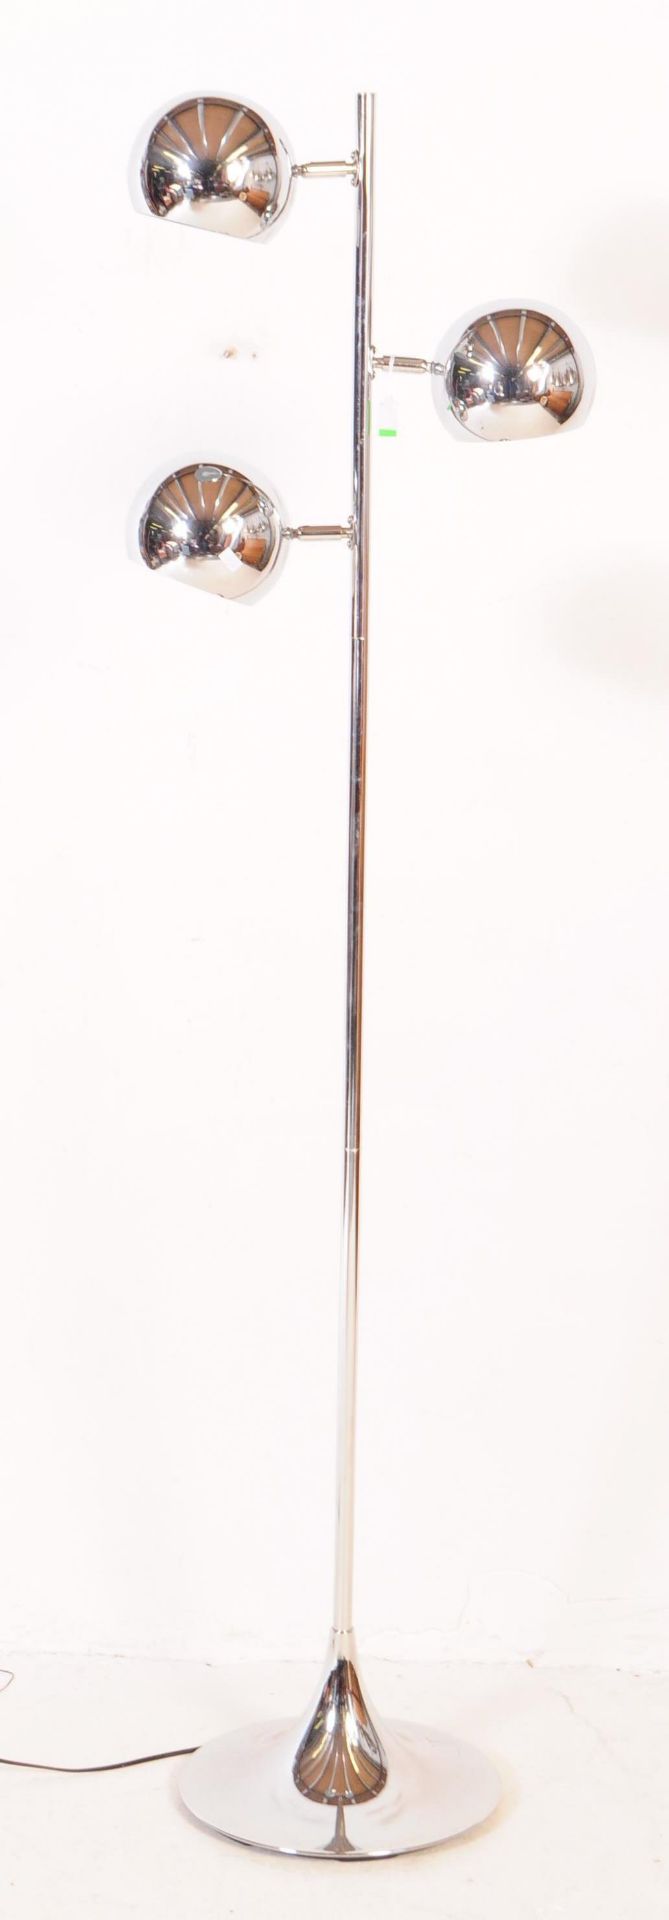 RETRO 1980S FLOOR STANDING CHROME EYEBALL LAMP LIGHT